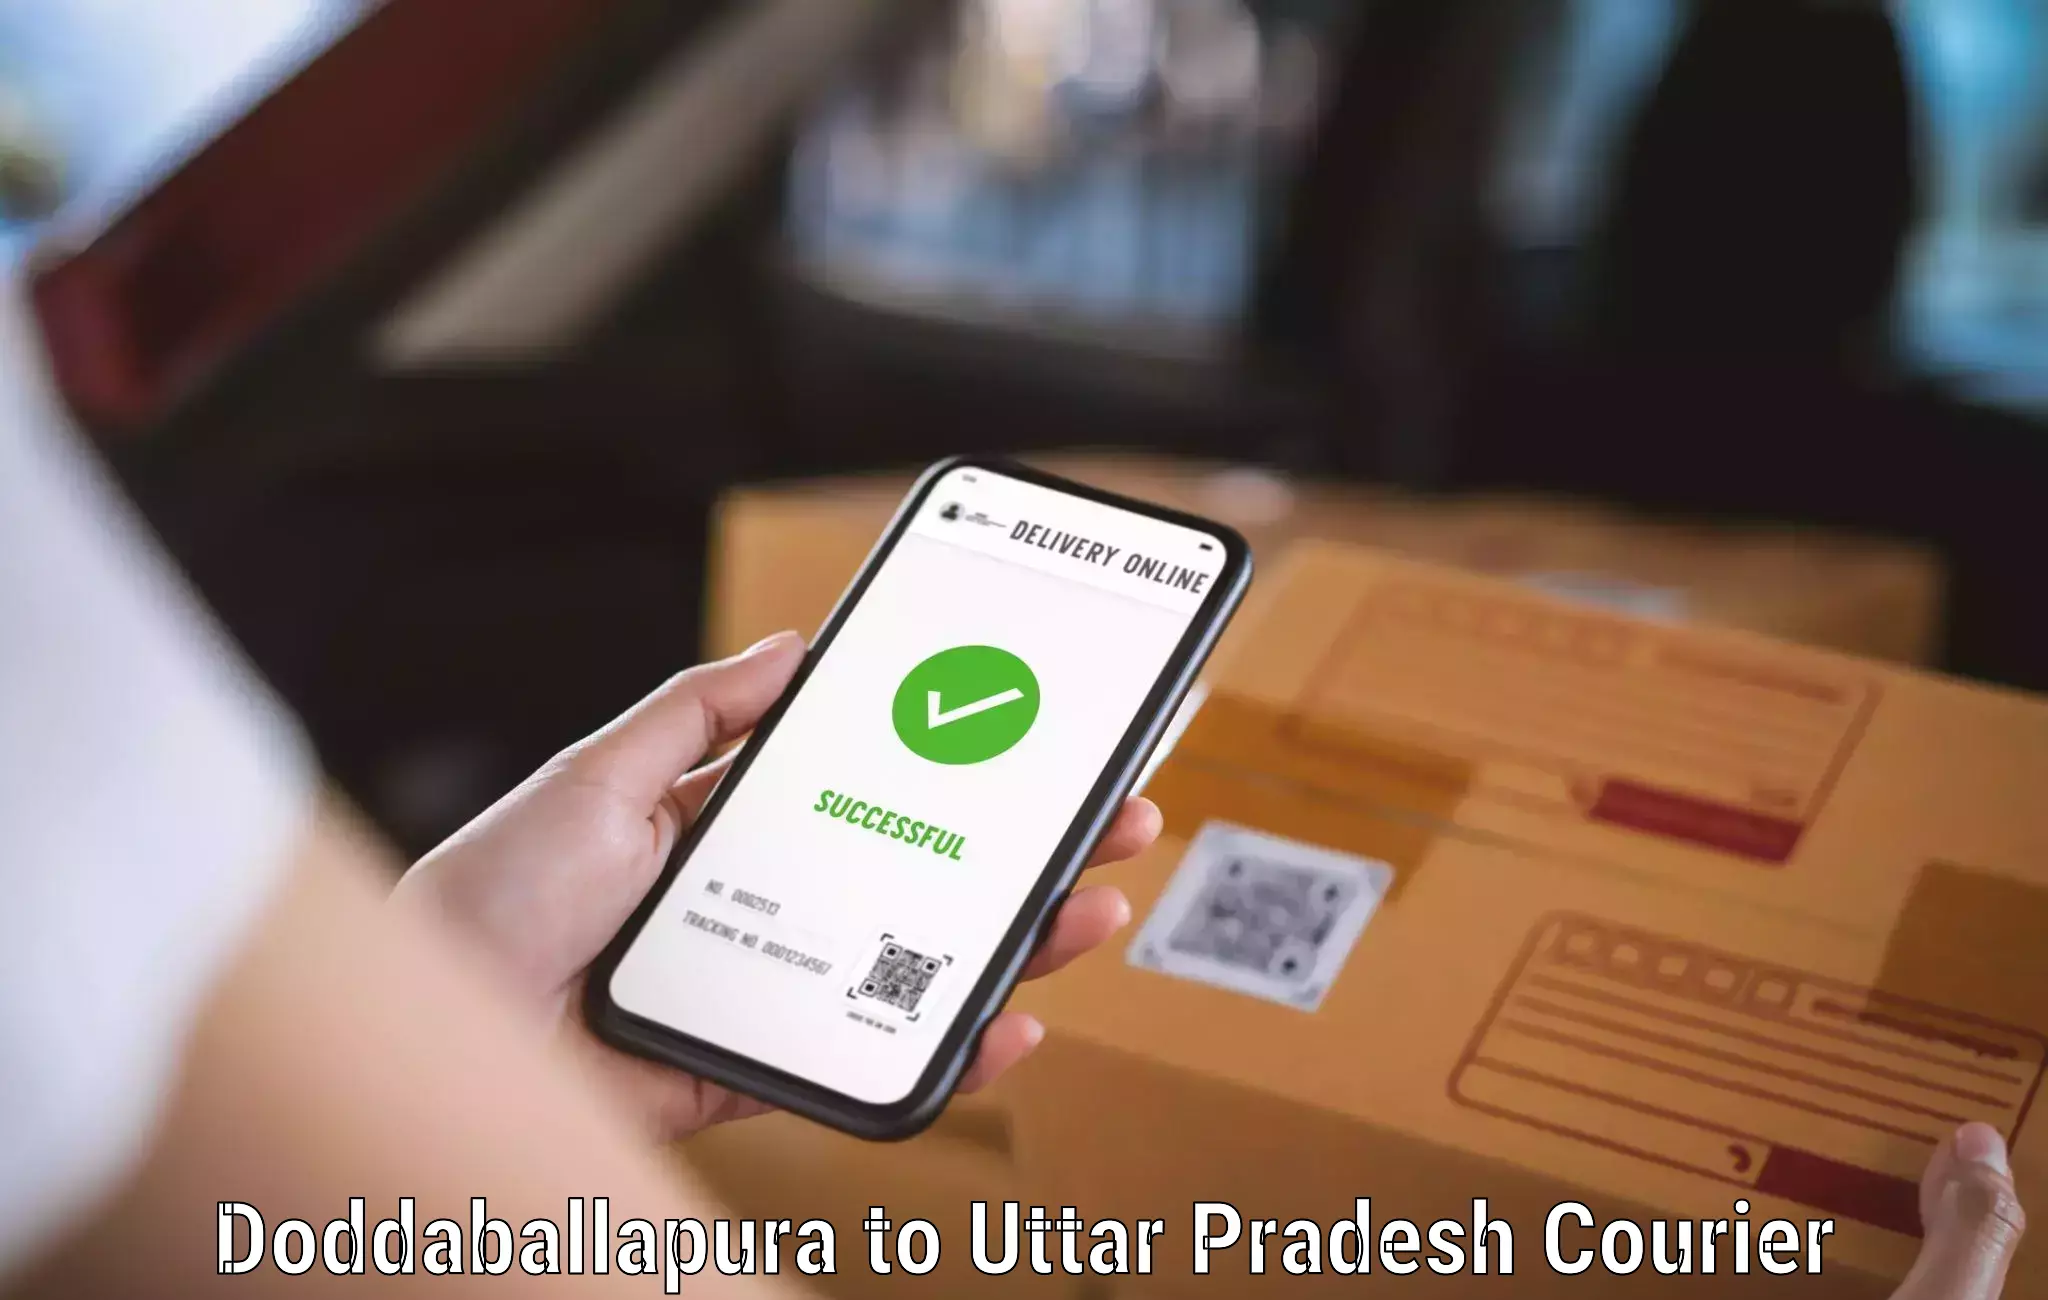 Advanced package delivery Doddaballapura to Colonelganj